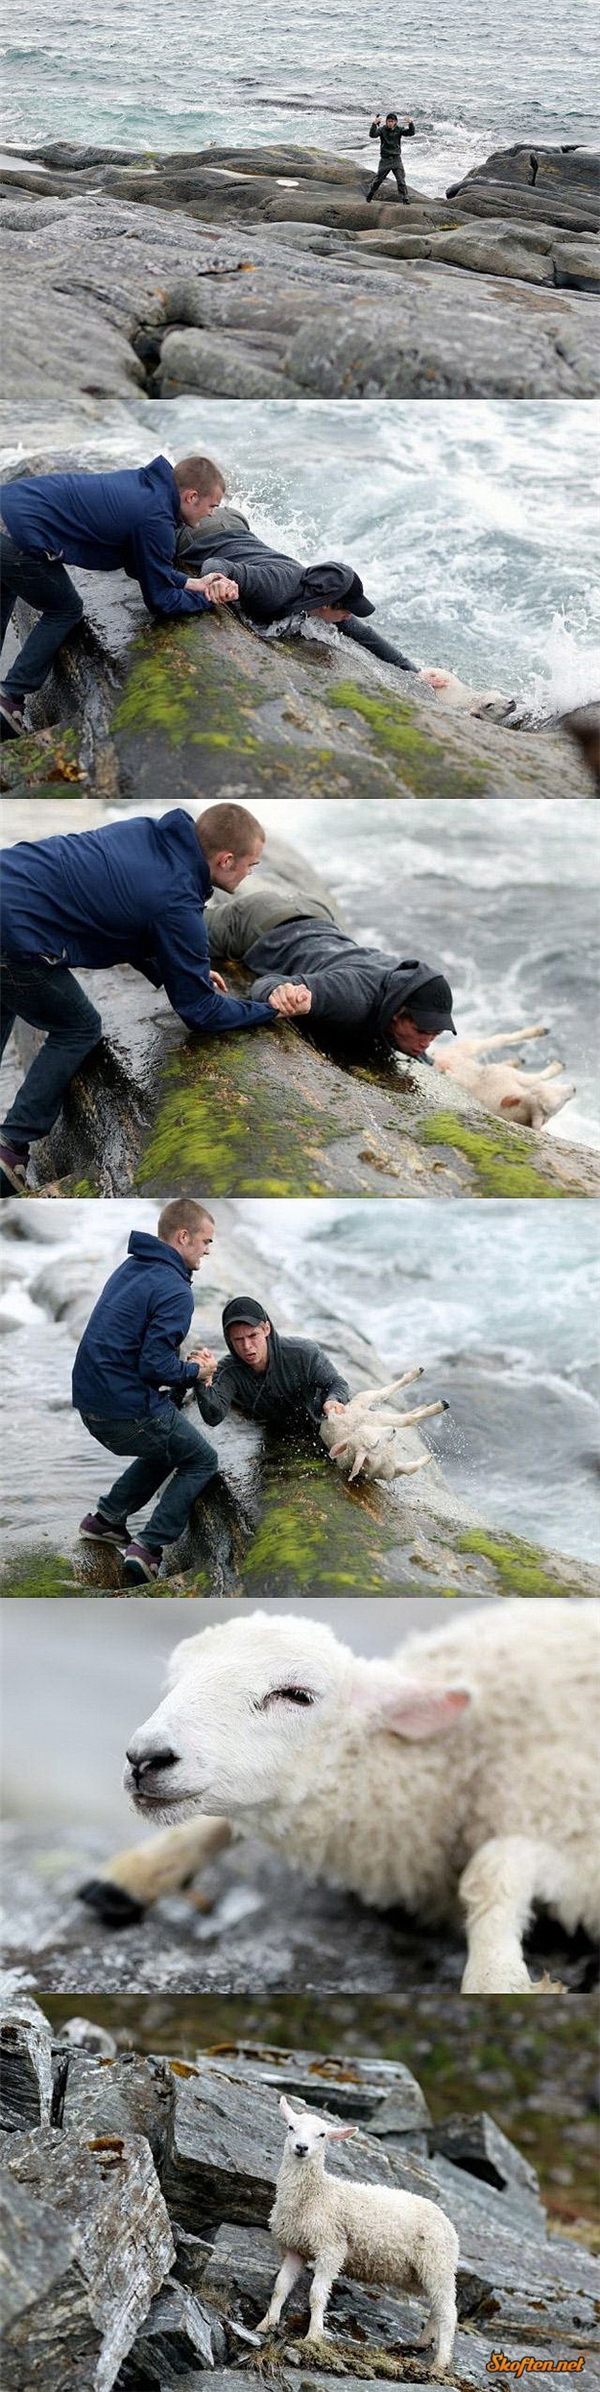 
Hai chàng trai người Na Uy mạo hiểm tính mạng để cứu một chú cừu nhỏ bị trôi giữa dòng nước dữ.